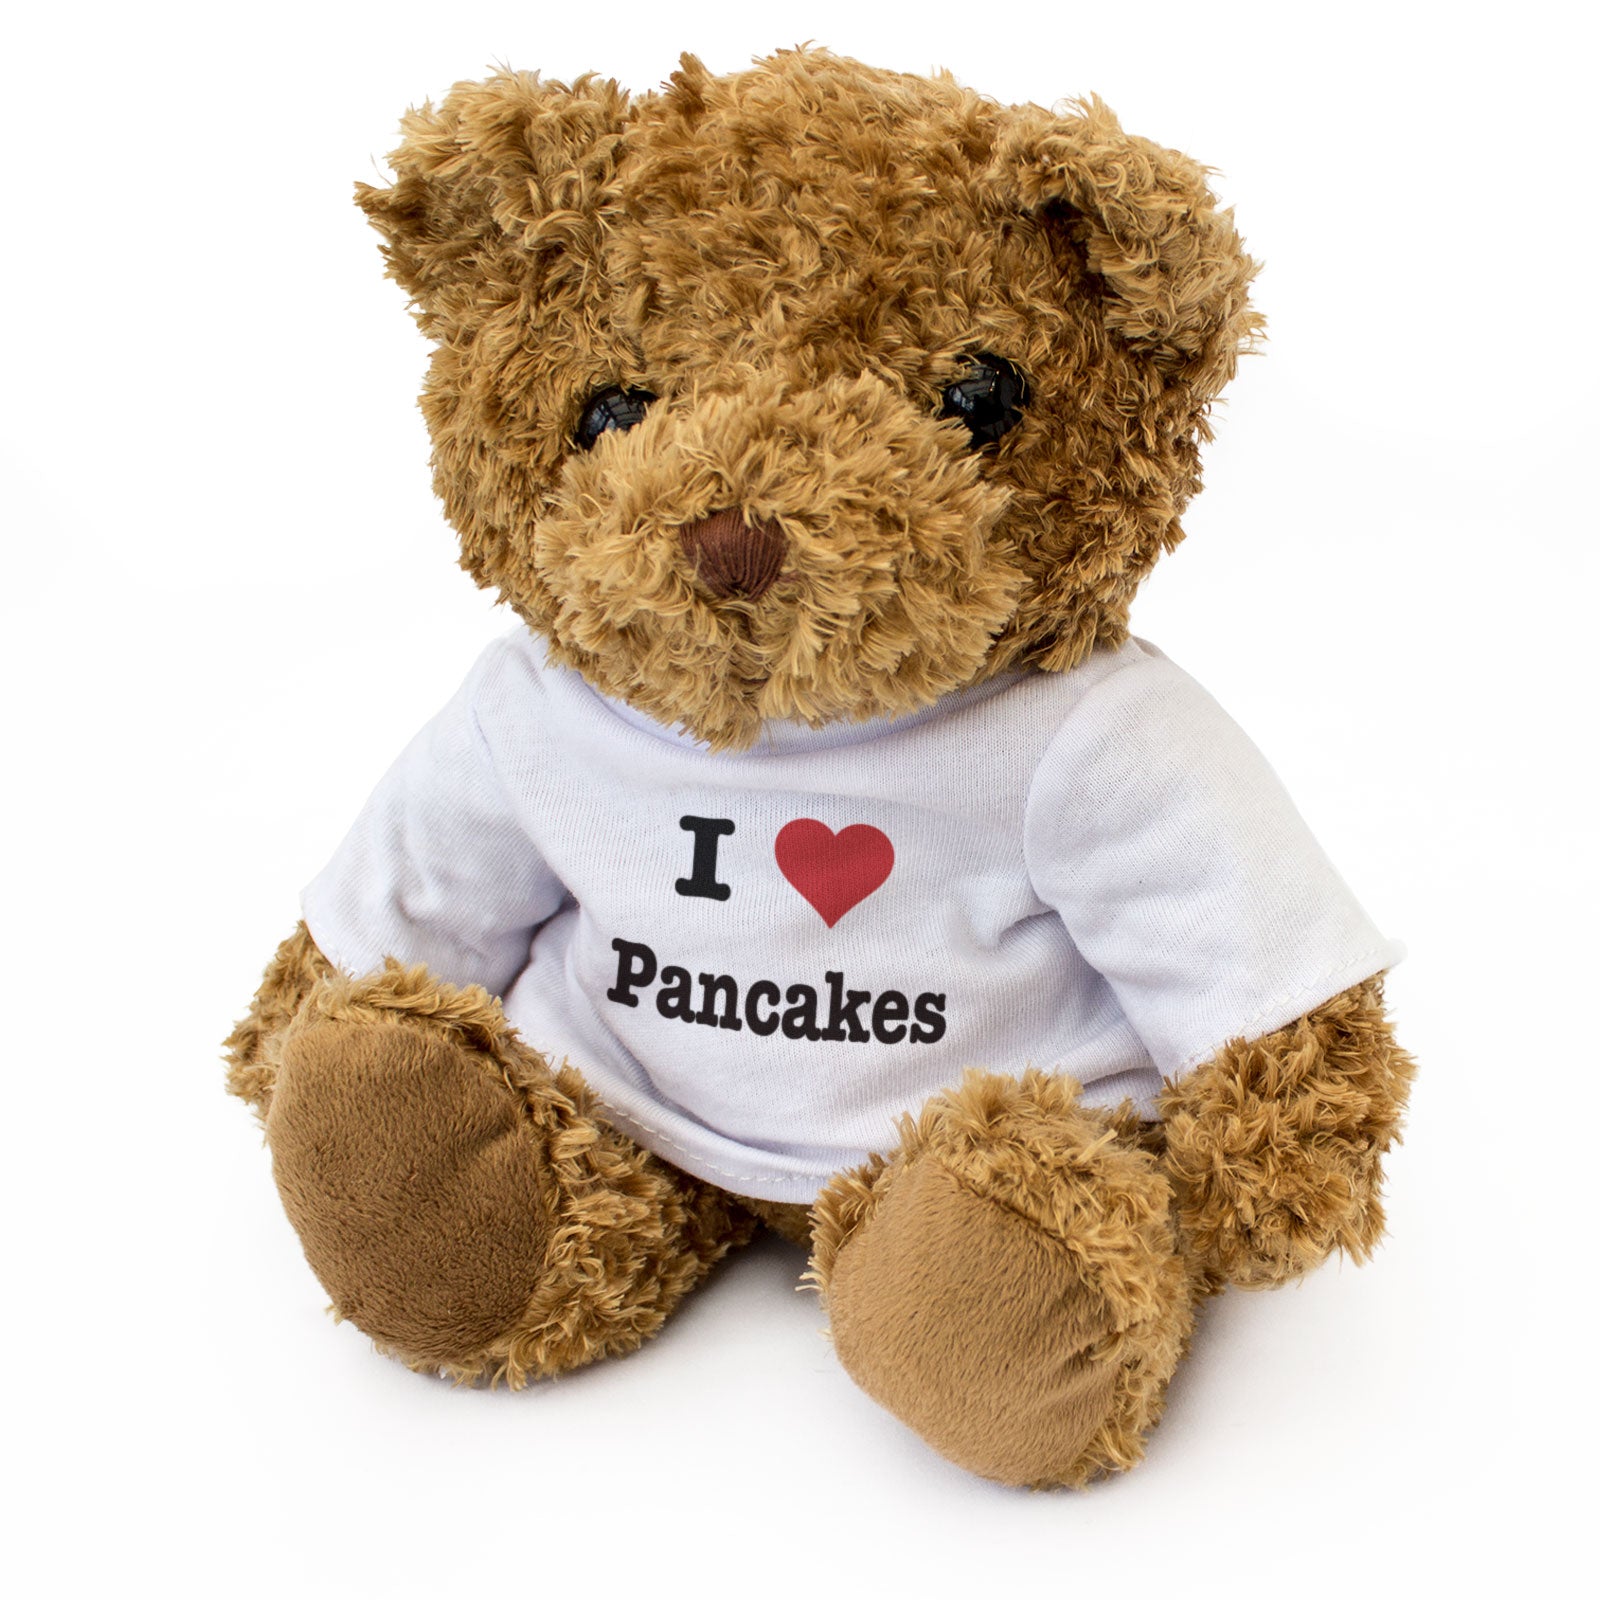 I Love Pancakes - Teddy Bear